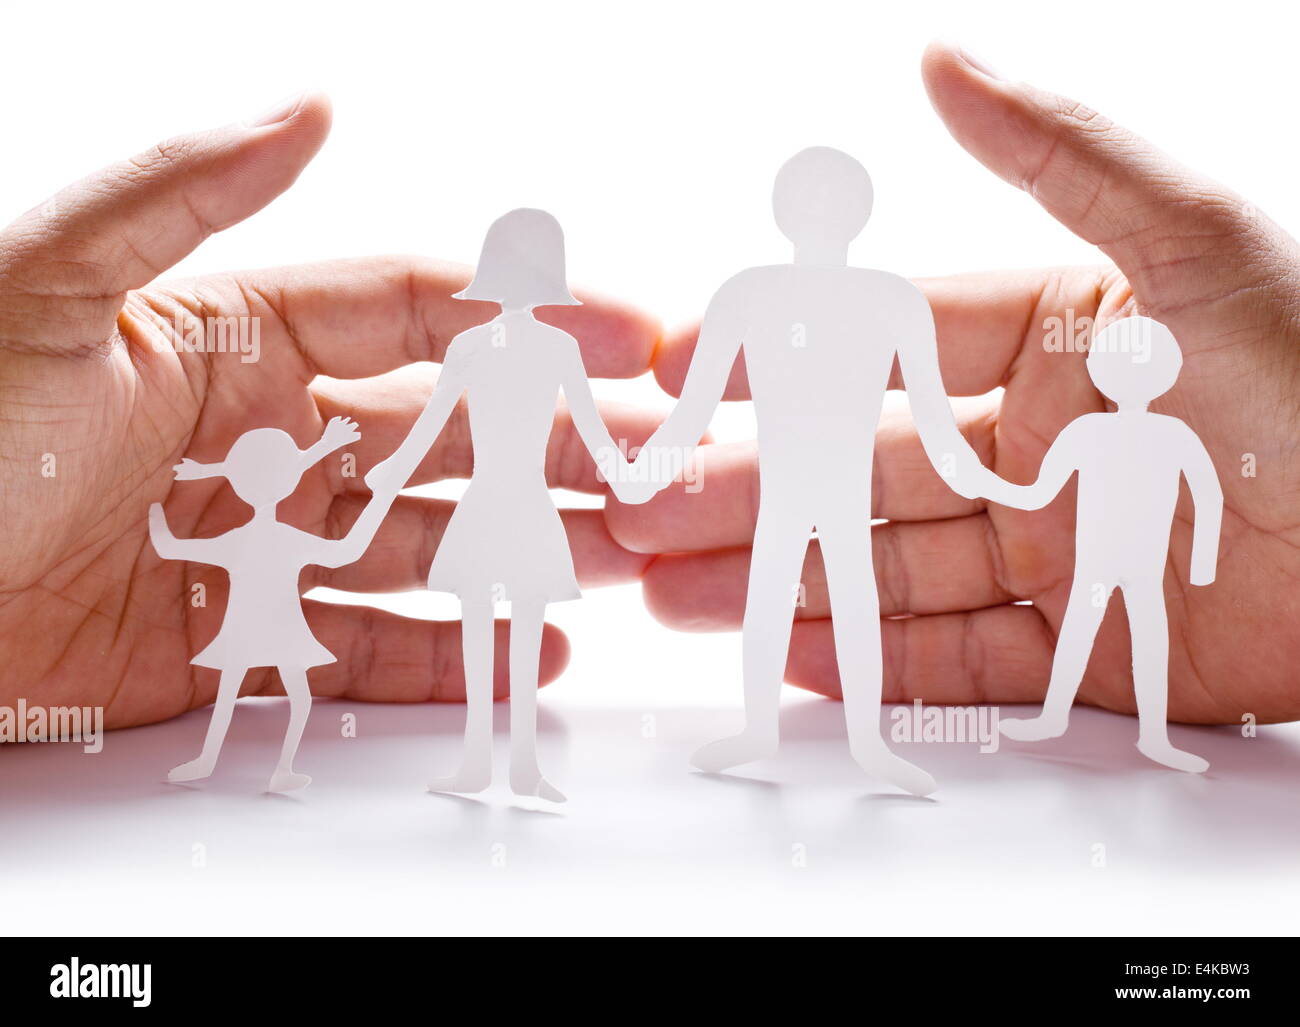 Pappfiguren der Familie auf einem weißen Hintergrund. Das Symbol der Einheit und des Glücks. Händen umarmen sanft die Familie. Stockfoto